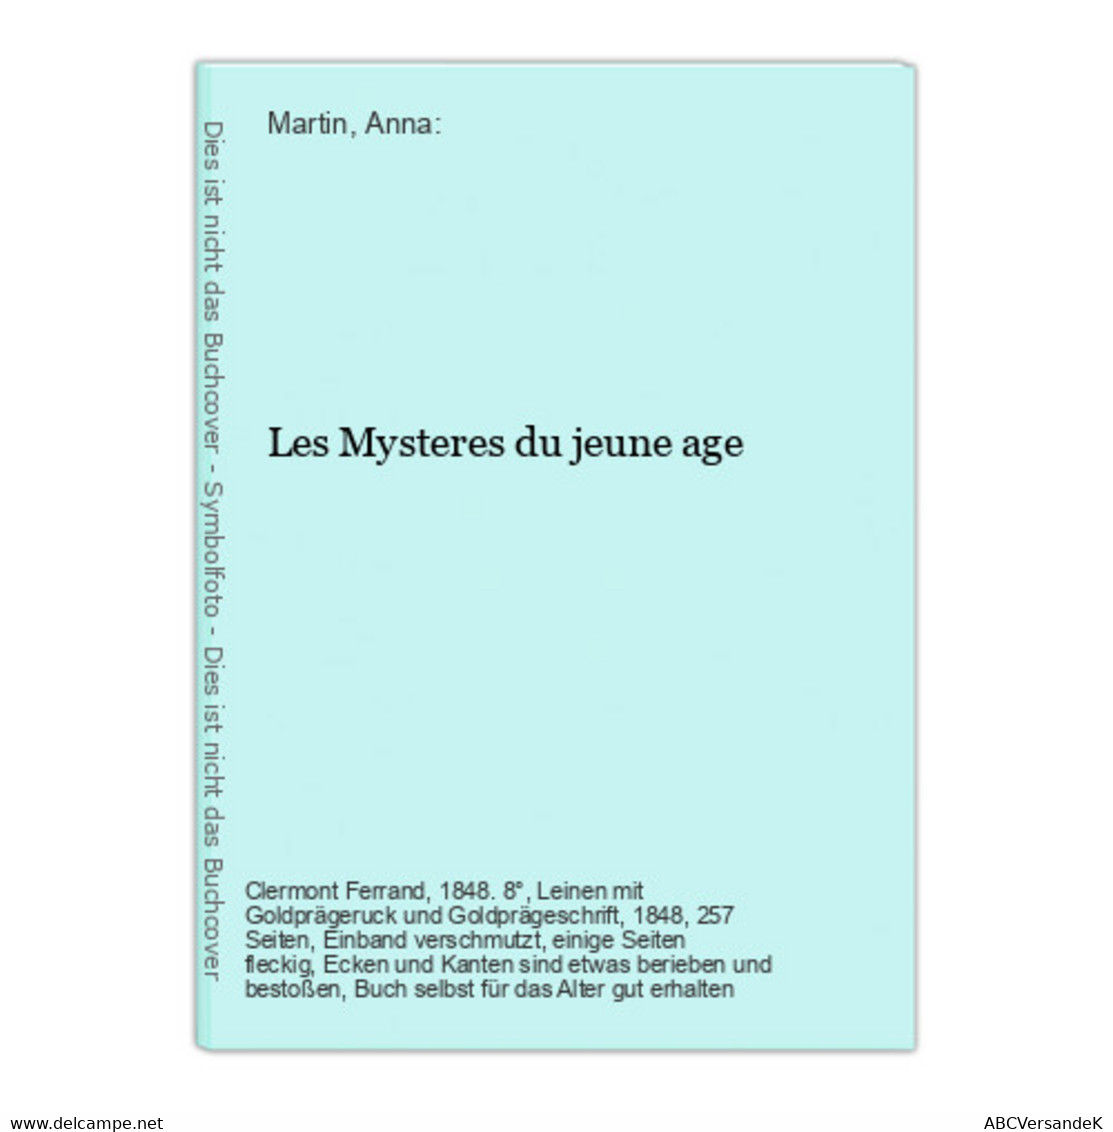 Les Mysteres Du Jeune Age - German Authors